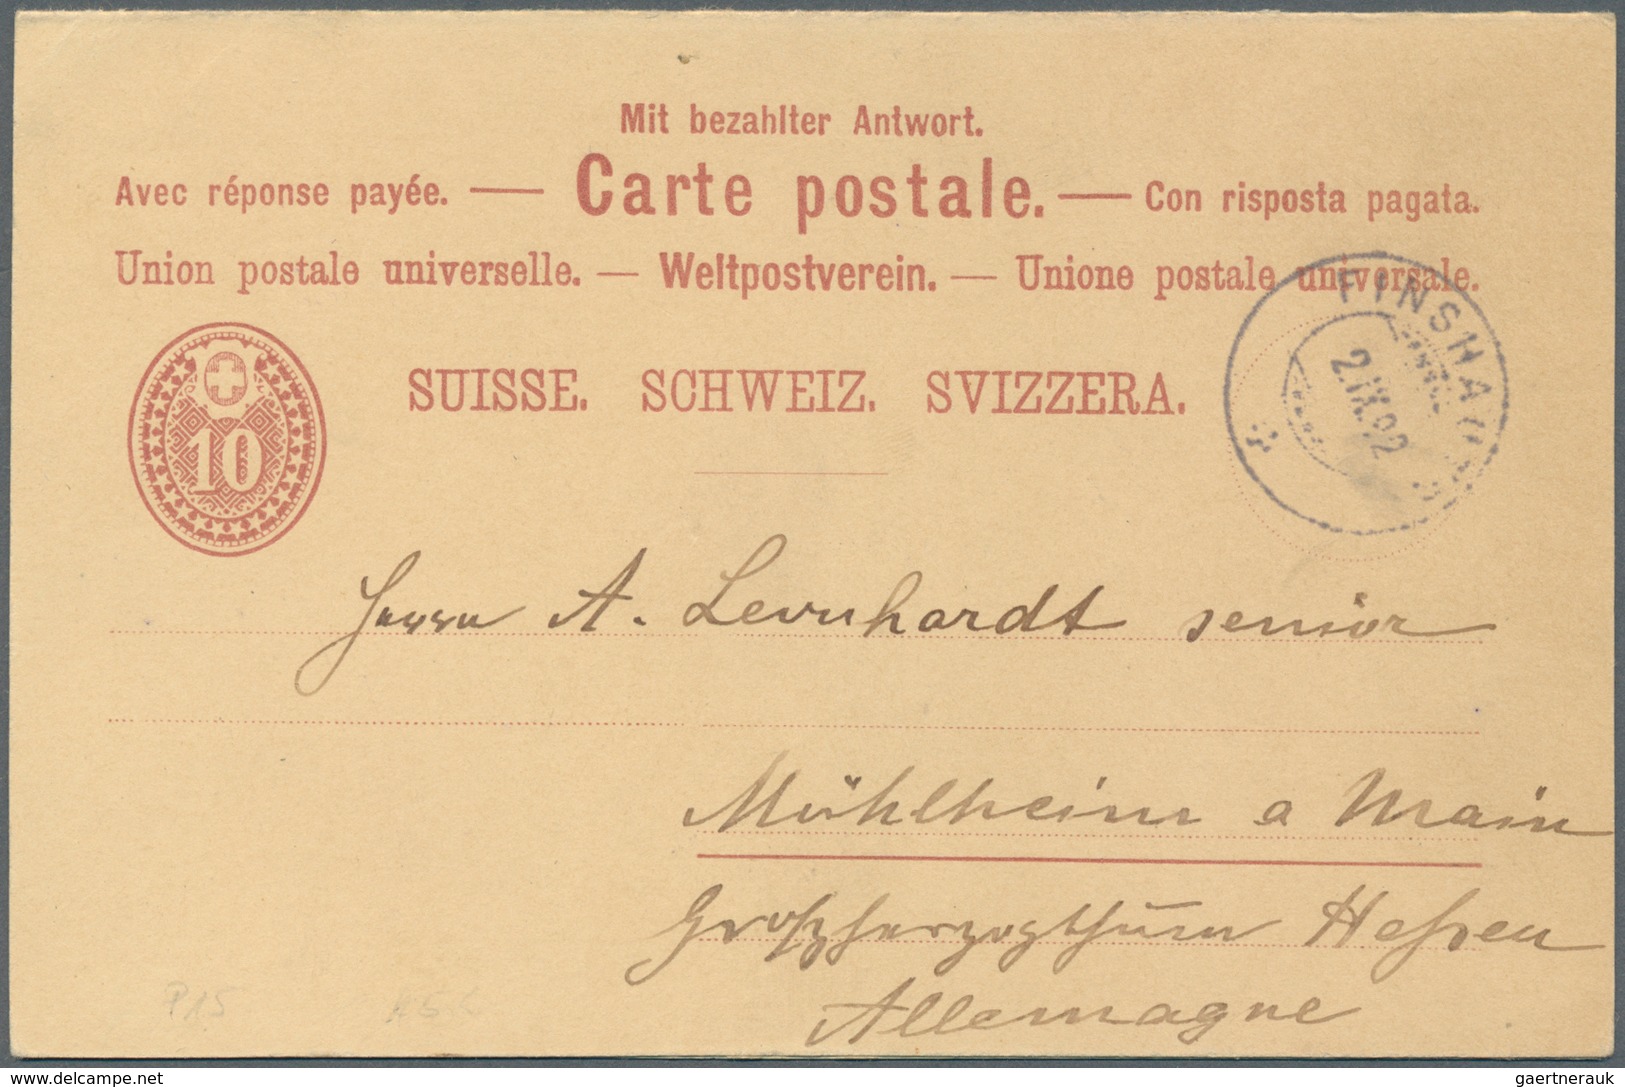 28161 Schweiz - Ganzsachen: 1867/1960 ca.: Umfangreicher Bestand von rund 500 Ganzsachen, meist gebraucht,